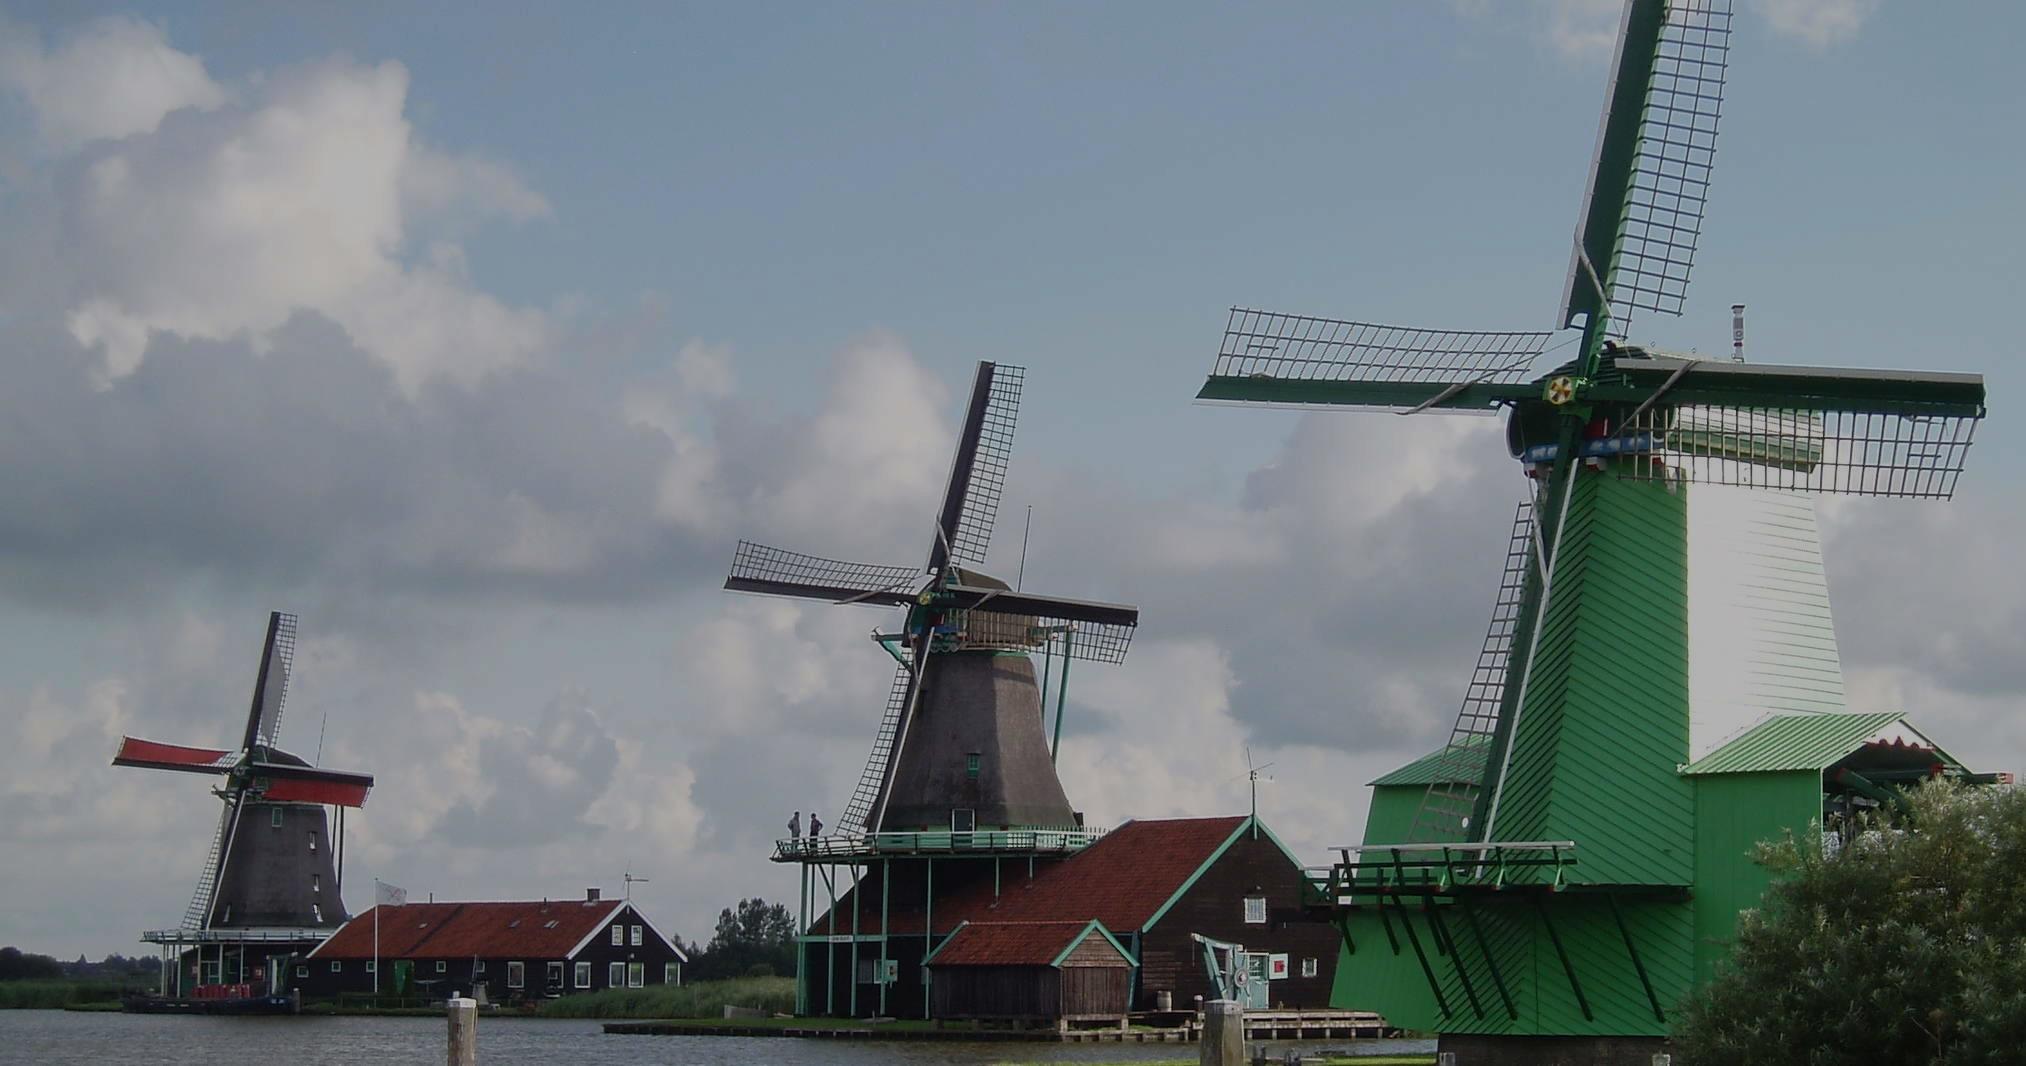 Excursión Molinos Zaanse Schans - Edam - Volendam y Marken - Accommodations in Ámsterdam